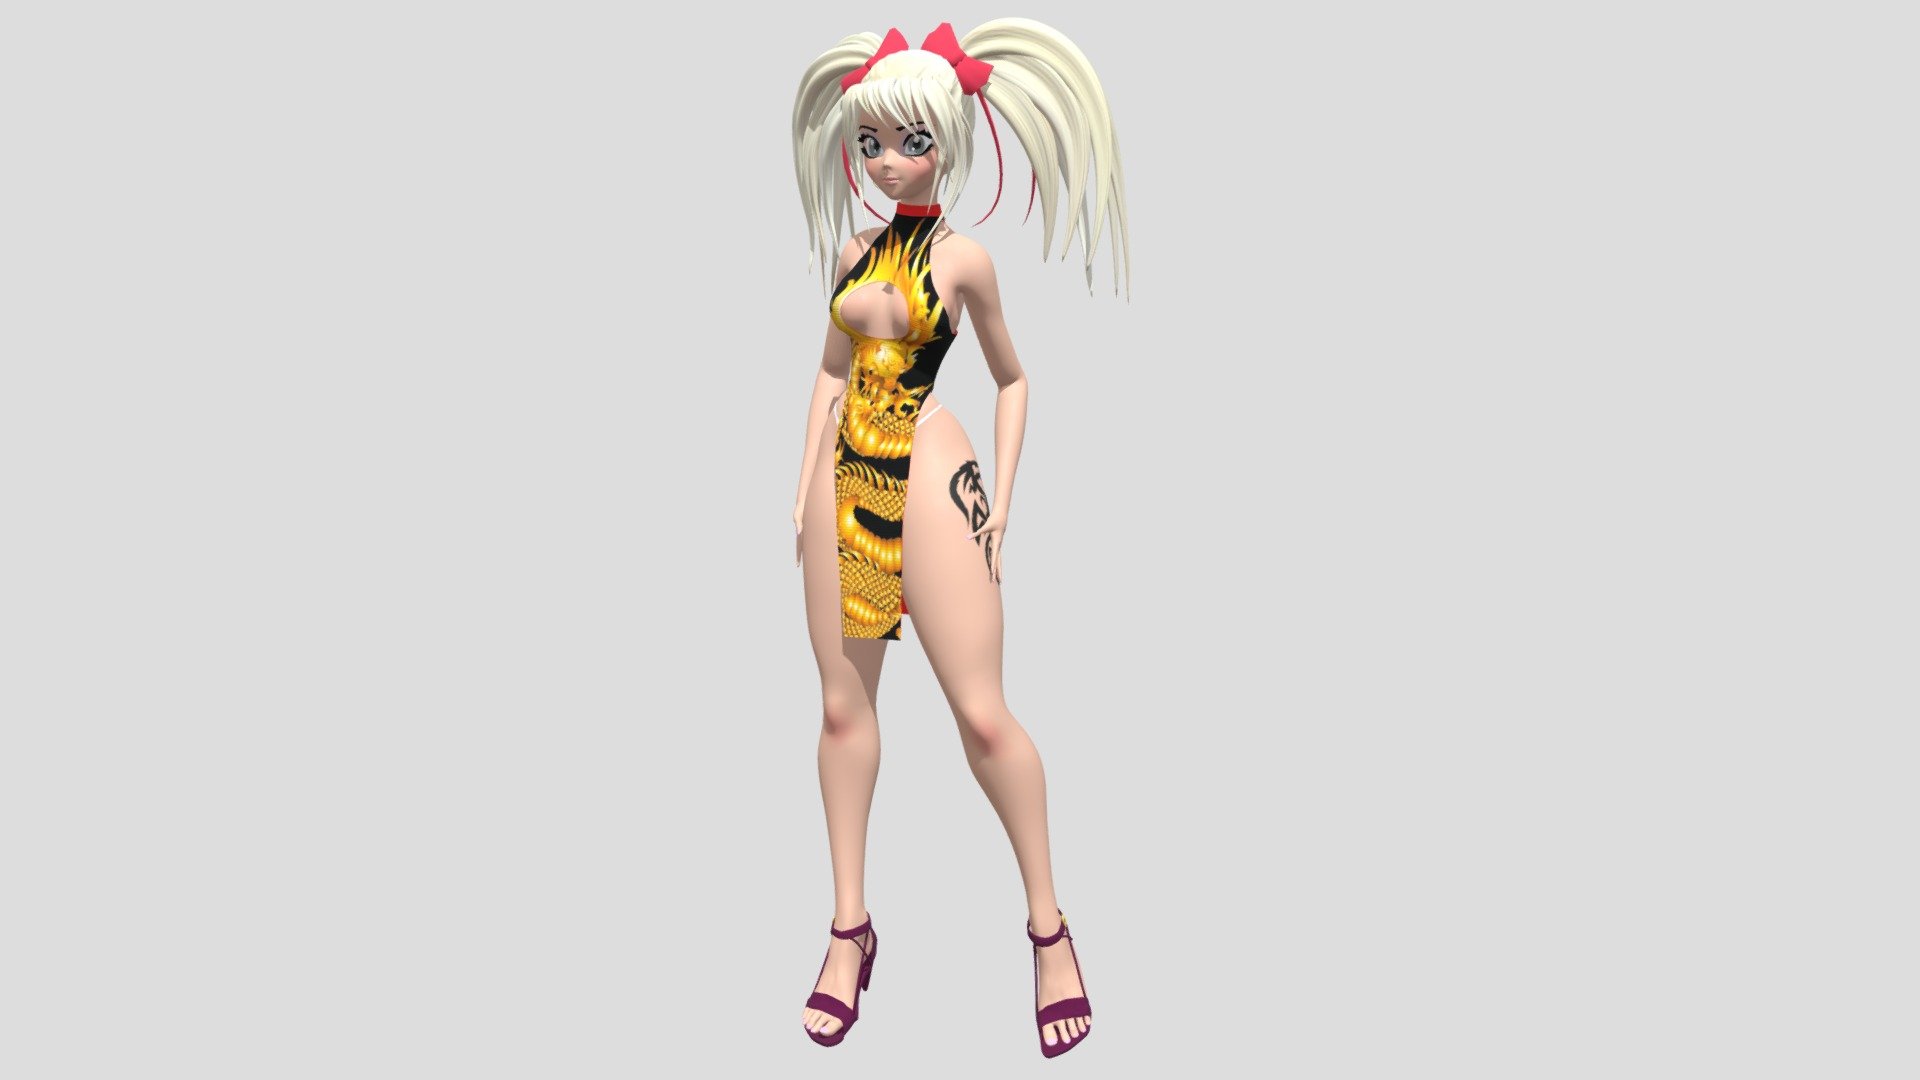 Software: Blender, Substance Painter, Morvelous dtsigner



 - Anime girl character - 3D model by Eugen_Rybakov 3d model